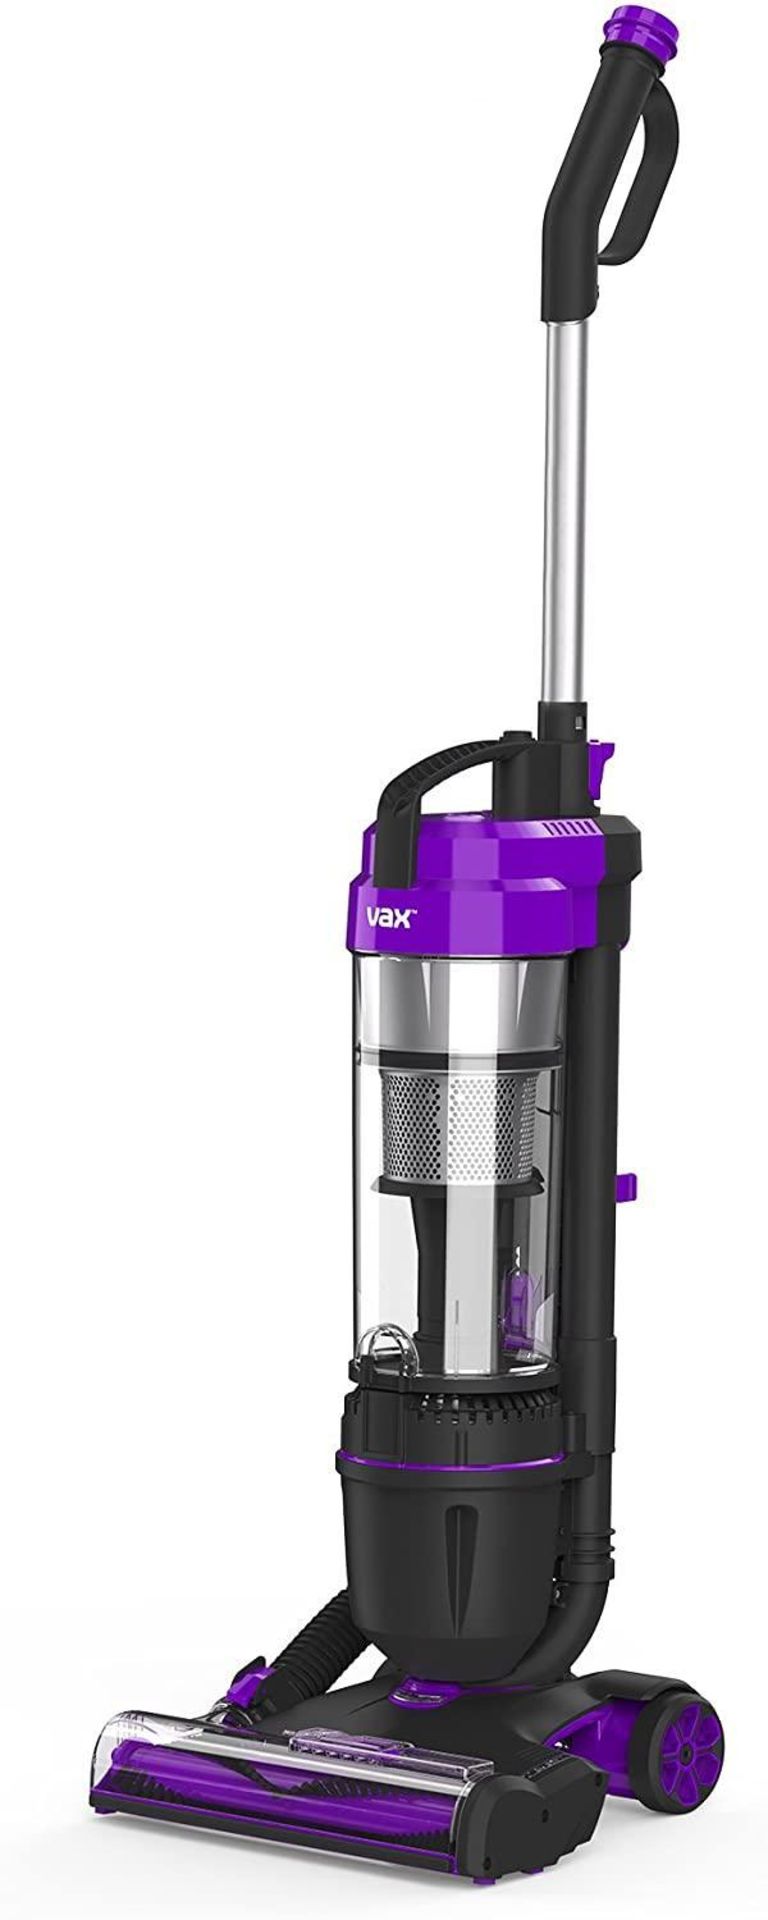 Vax Mach Air Upright Vacuum Cleaner, 1.5 Liters, Purple £79.99 RRP